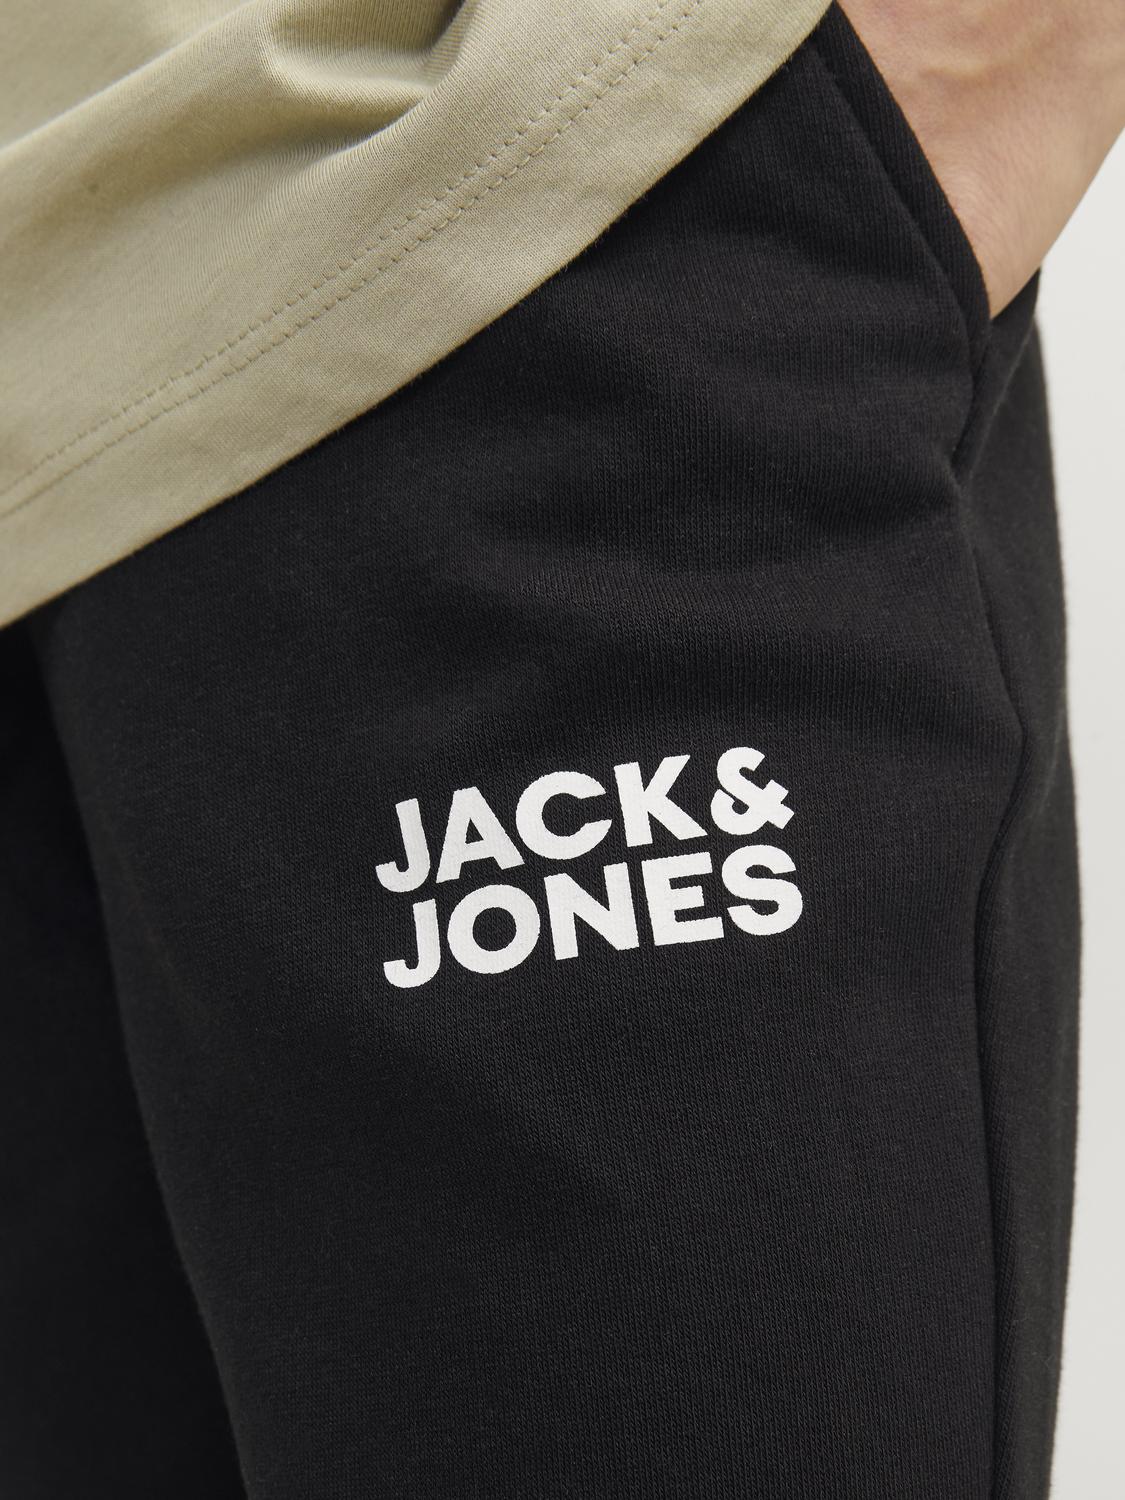 Jack & Jones Joggers Mini -Black - 12257312